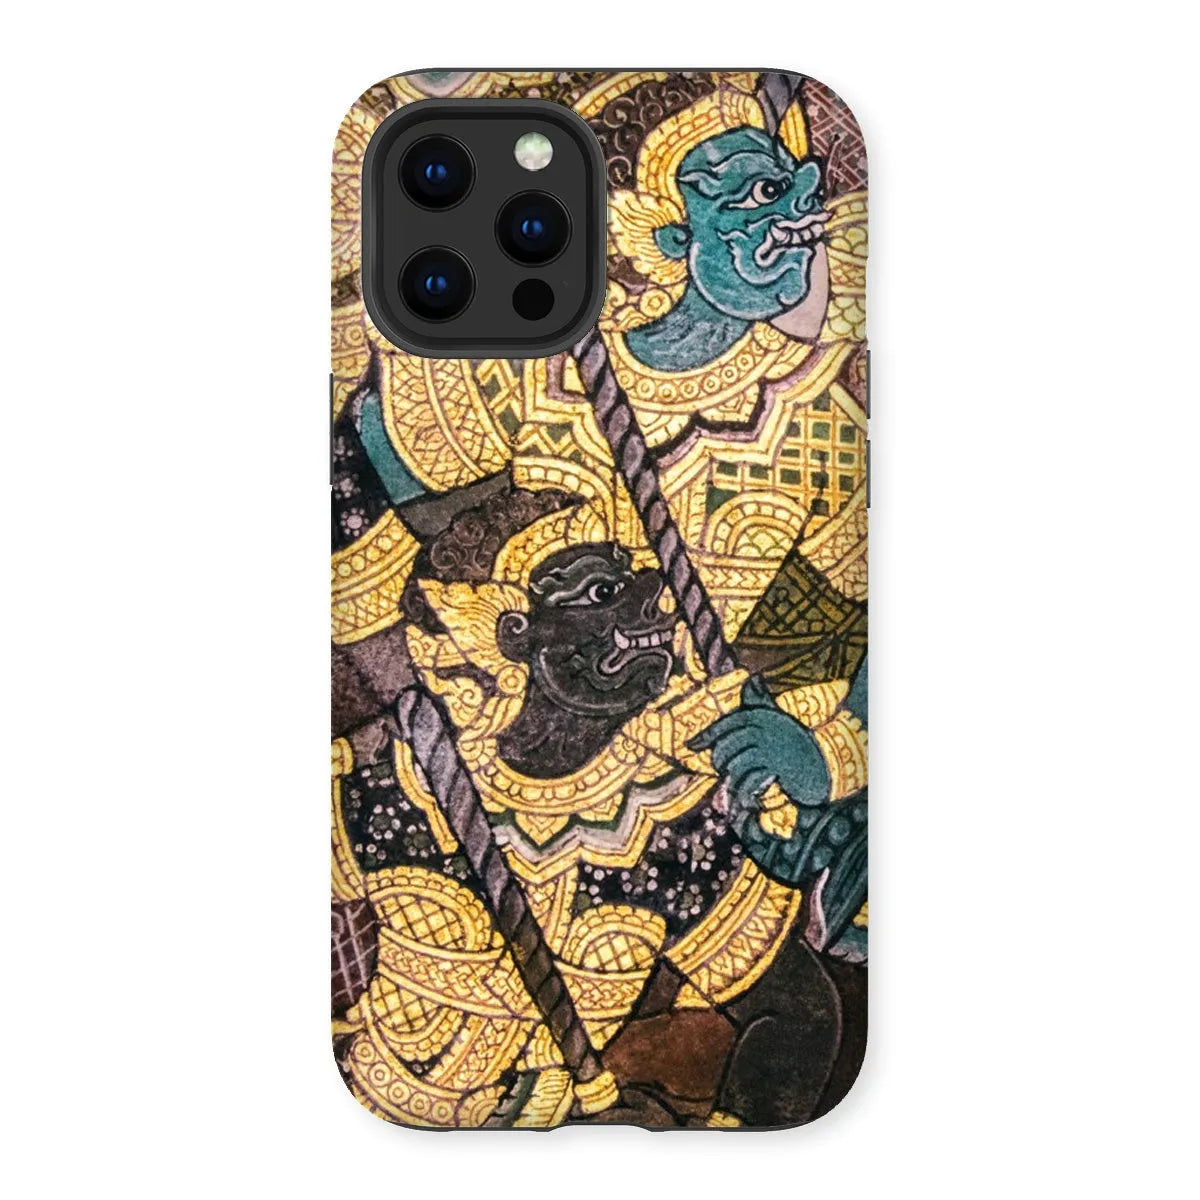 Action Men - Ancient Thai Temple Art Phone Case - Iphone 12 Pro Max / Matte - Mobile Phone Cases - Aesthetic Art